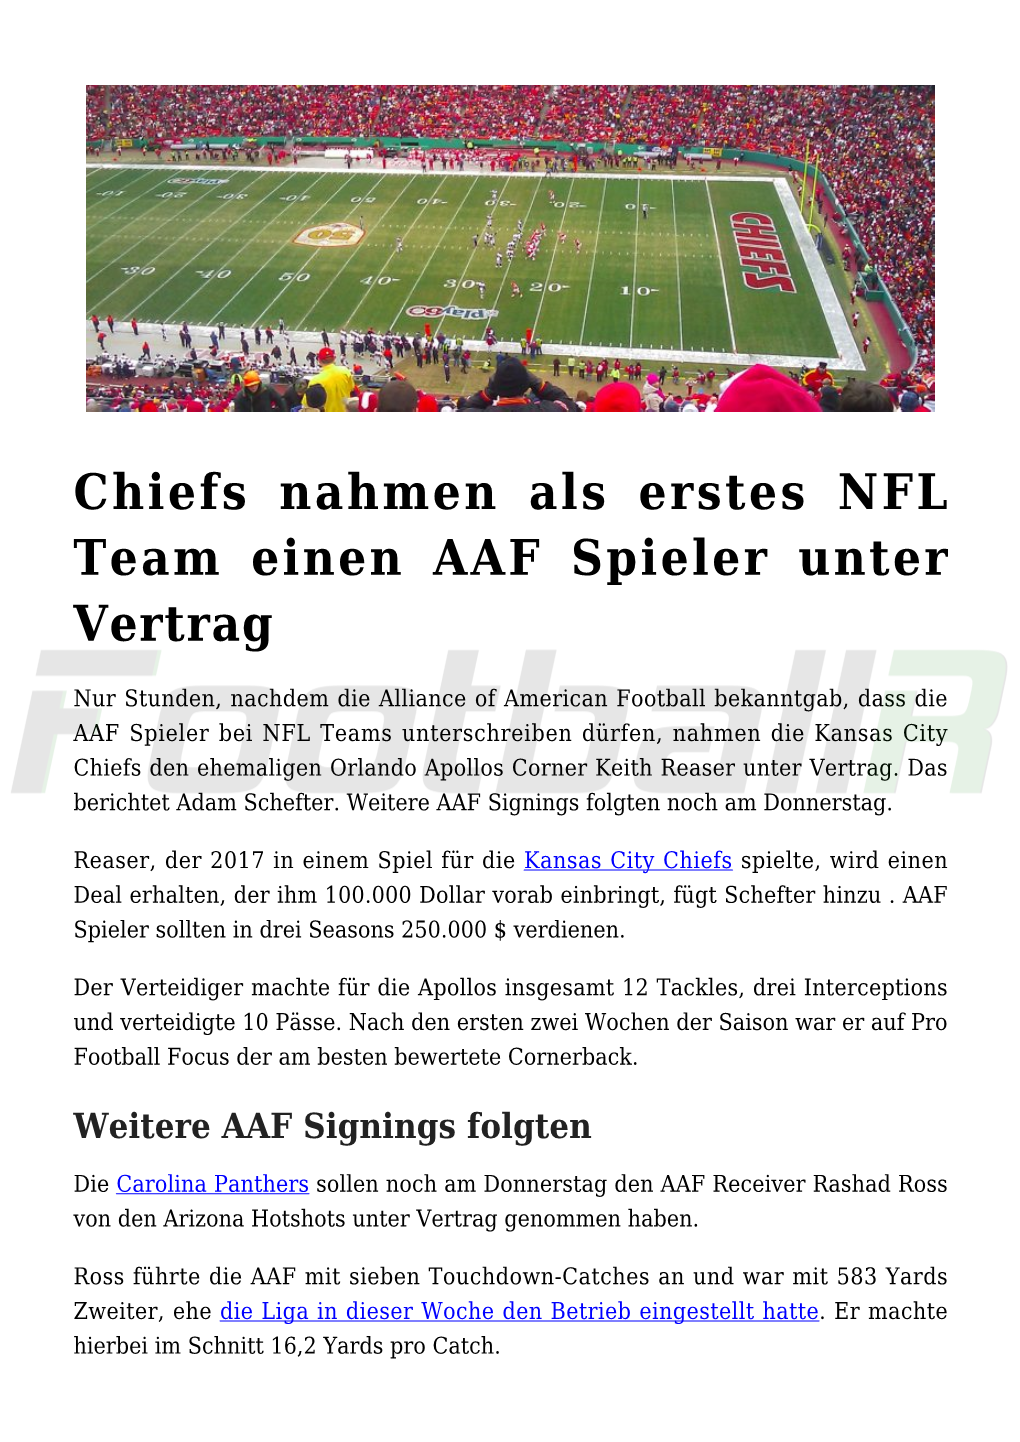 Chiefs Nahmen Als Erstes NFL Team Einen AAF Spieler Unter Vertrag